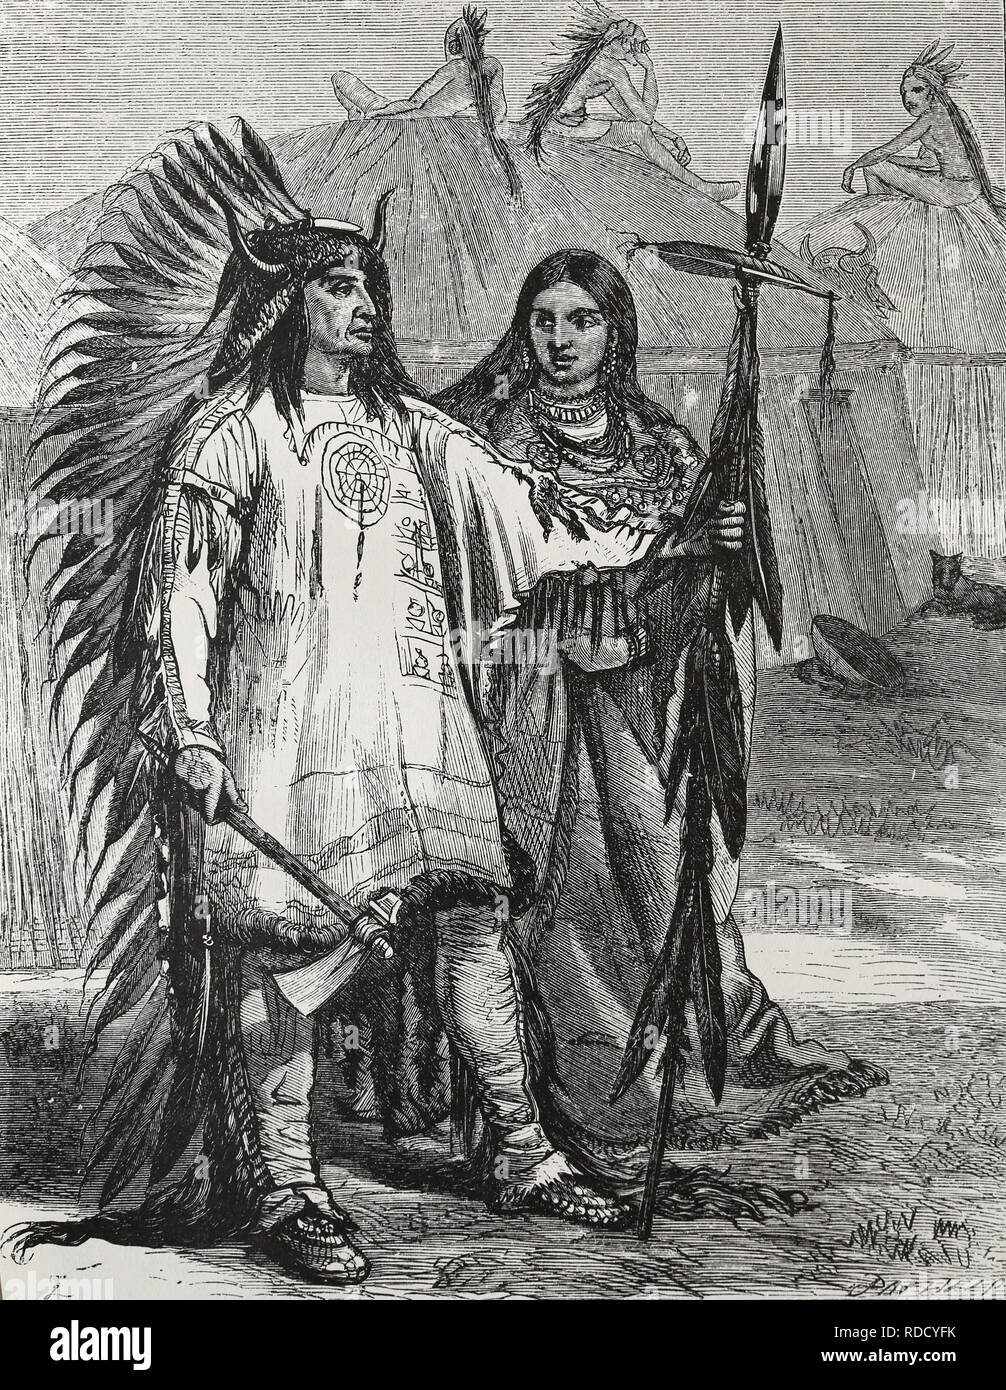 Nordamerika. Indianer. Gravur, 19. 1880. Stockfoto